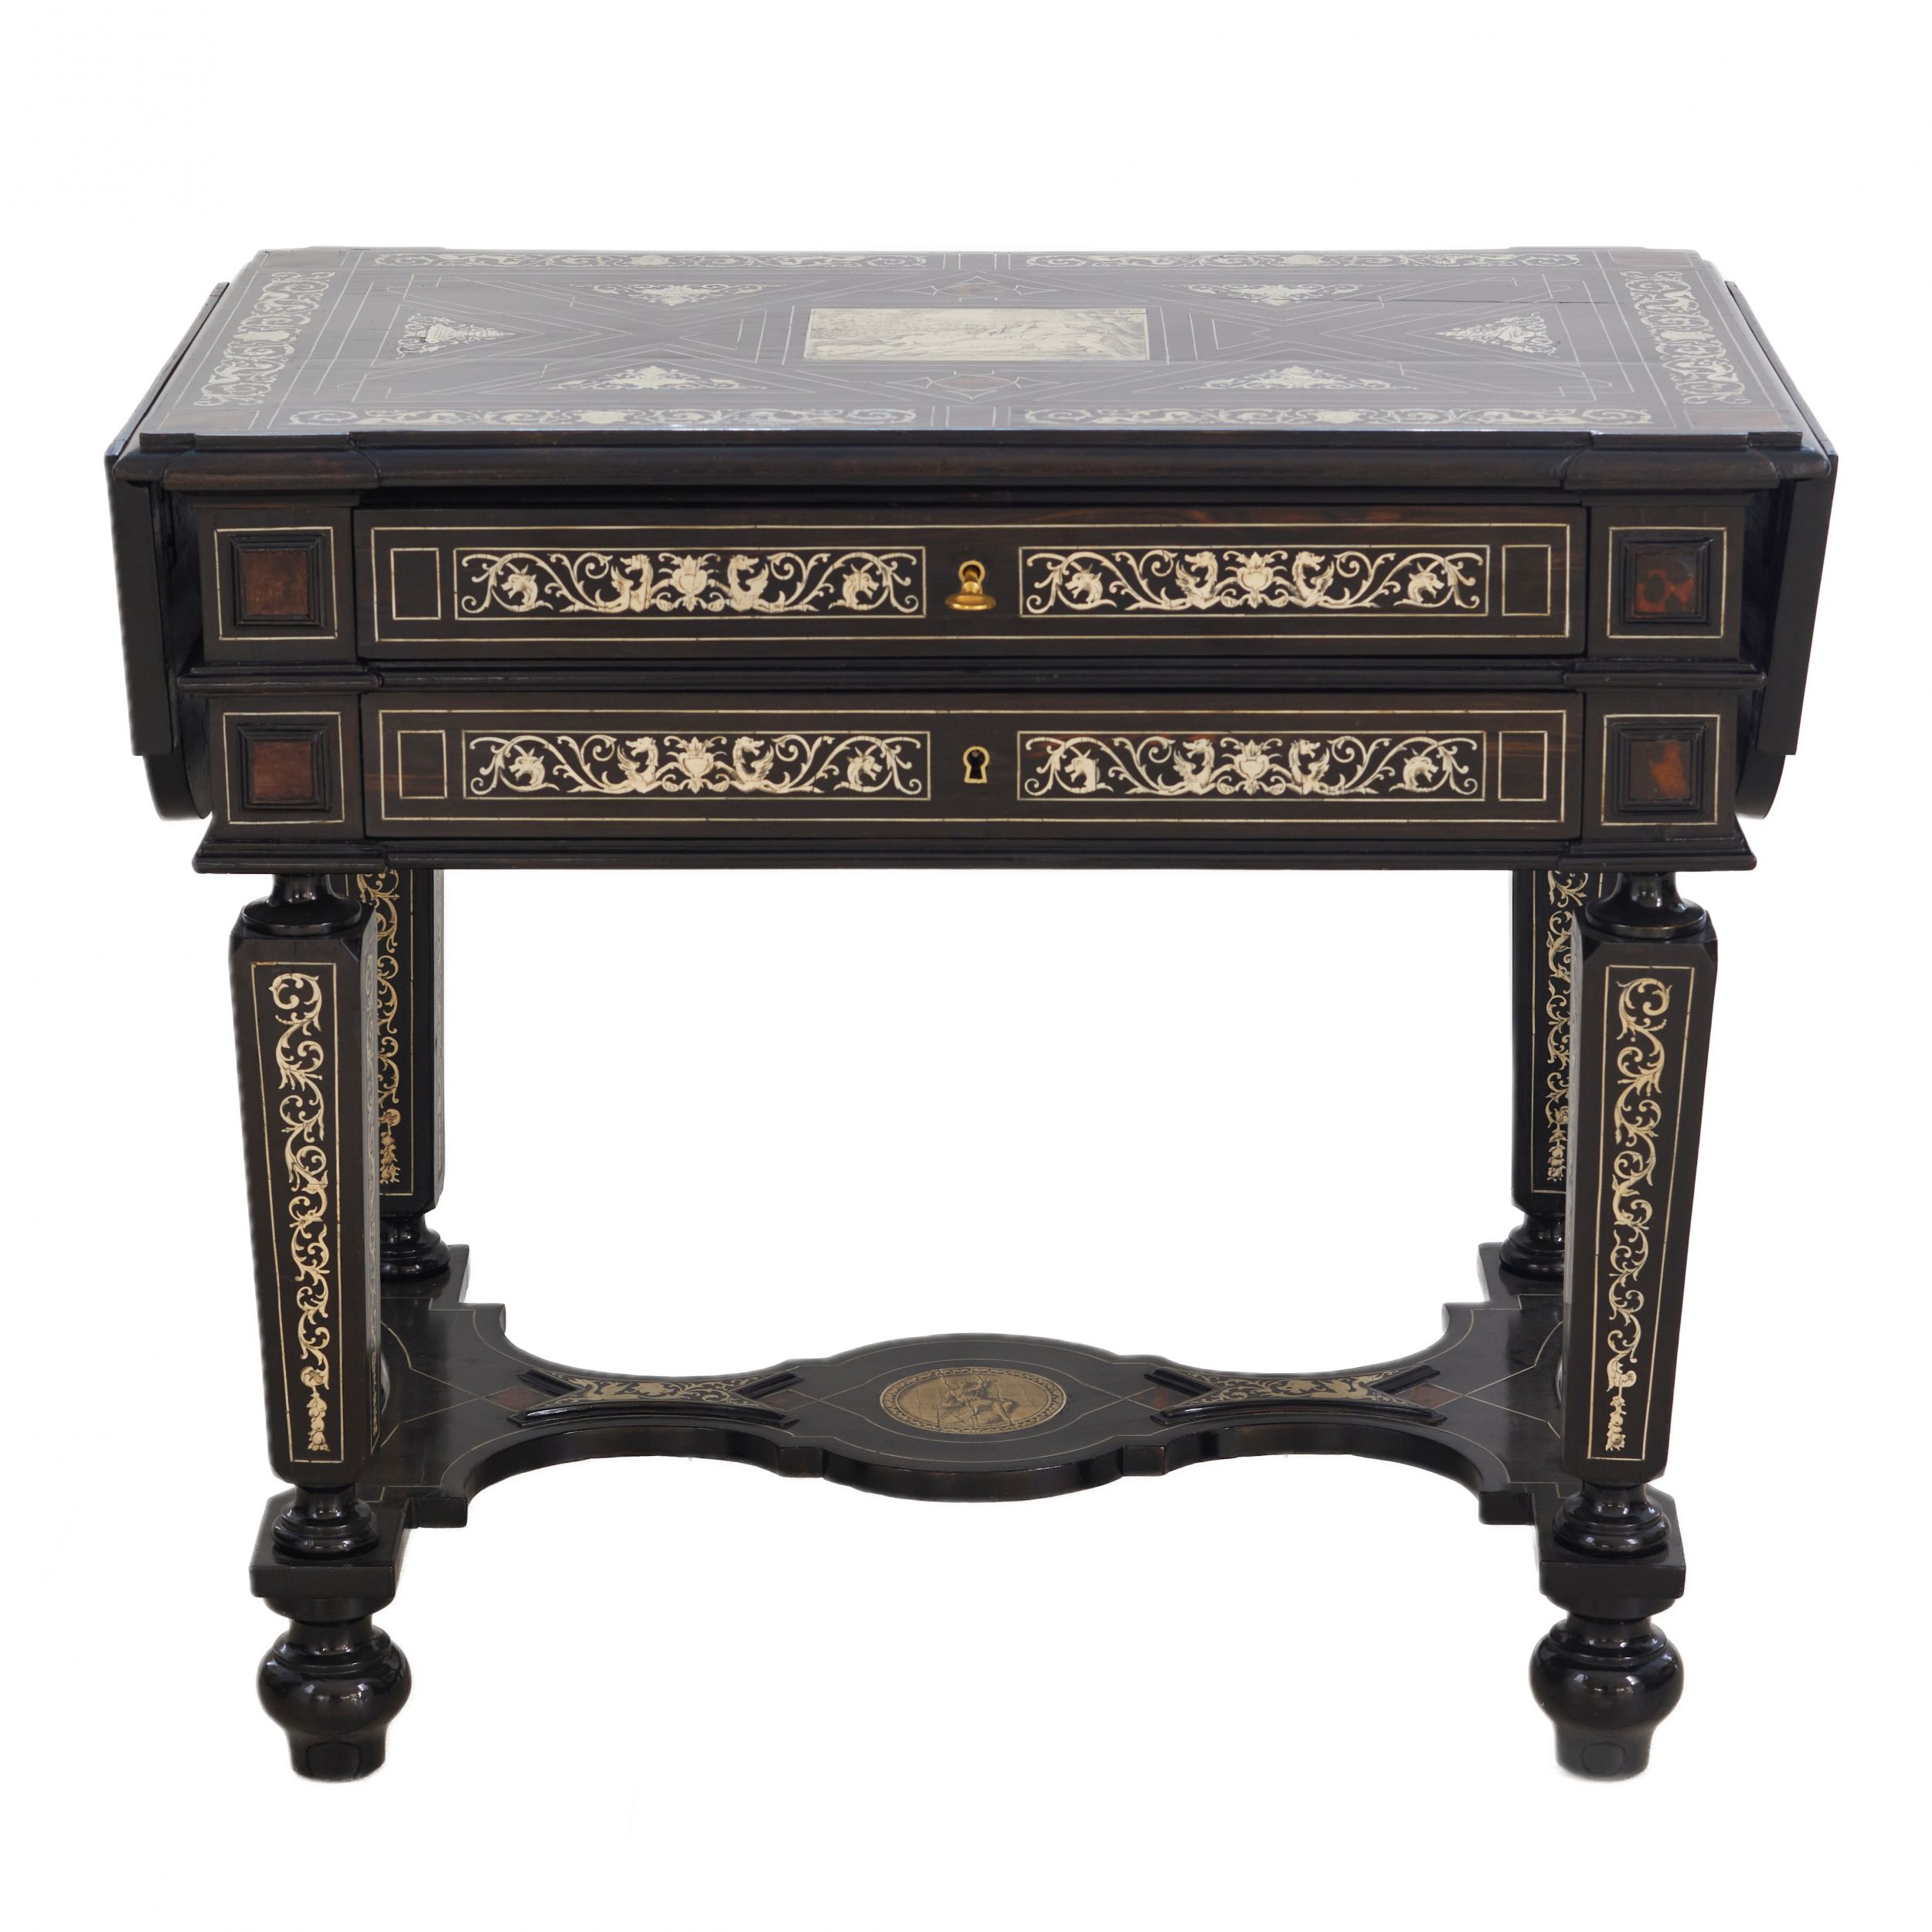 Ferdinando-Pogliani-Desk-from-the-19th-century-in-the-Neo-Renaissance-style